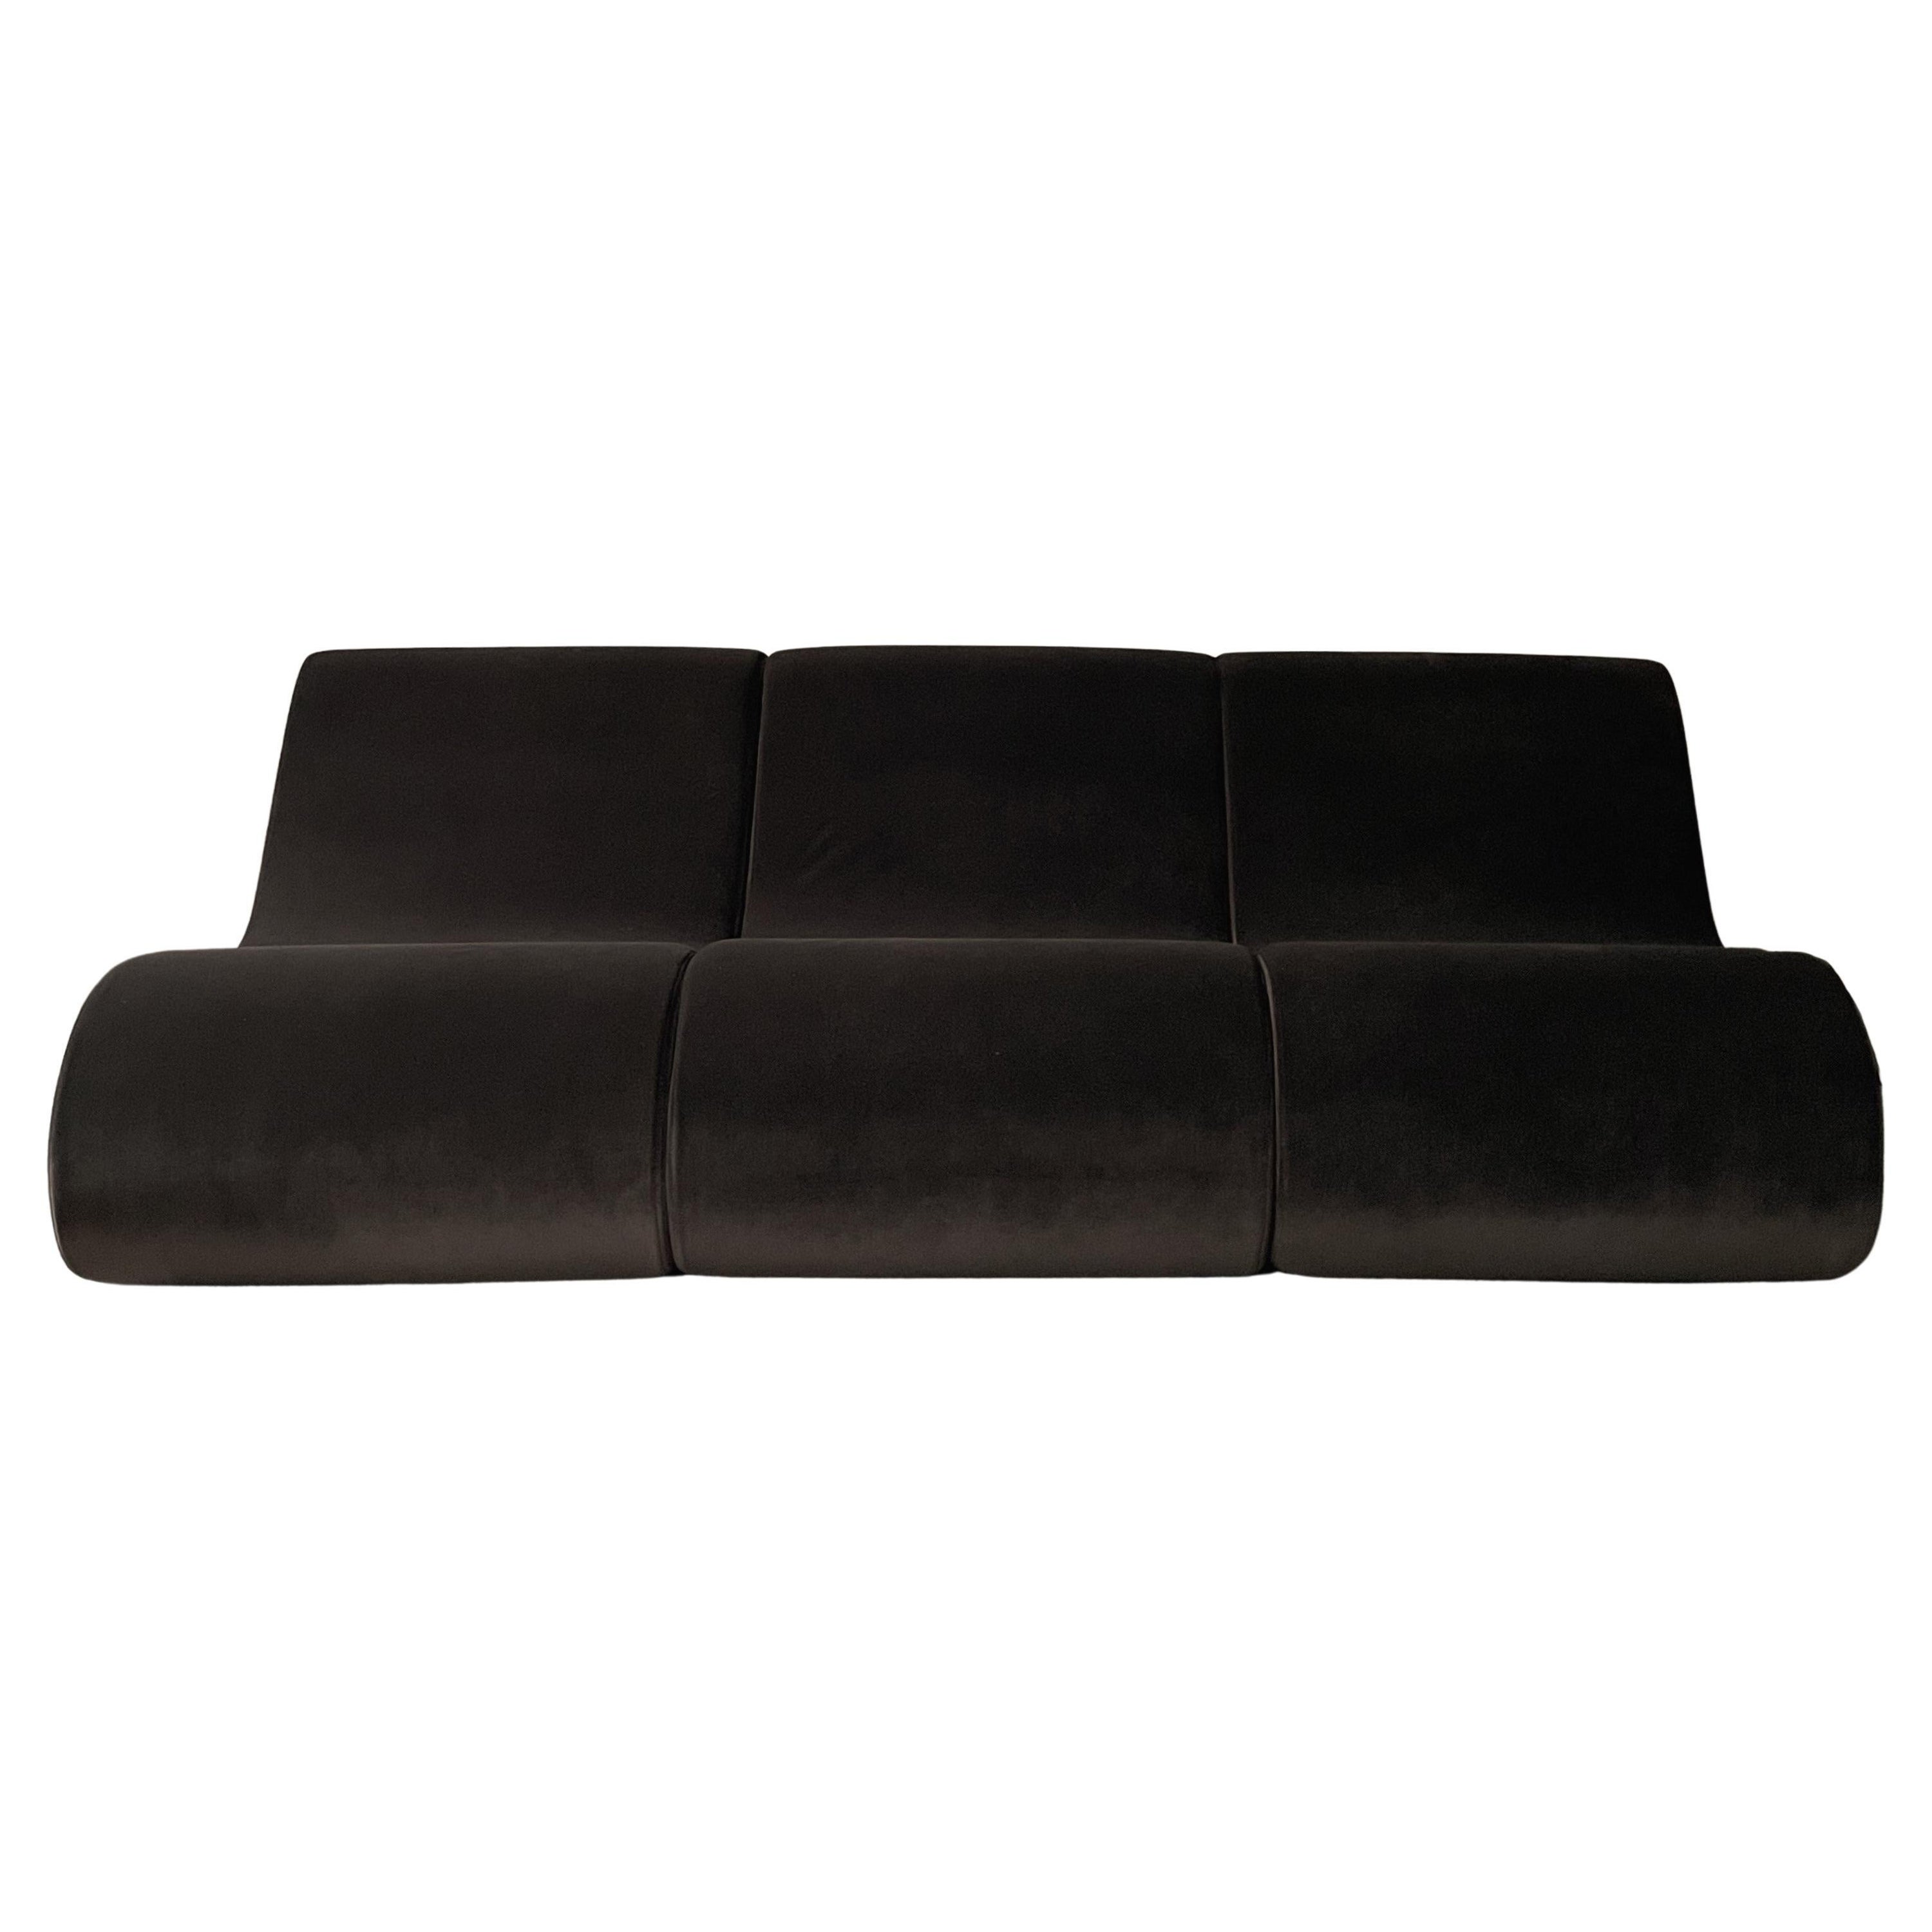 Modular Sofa by kar